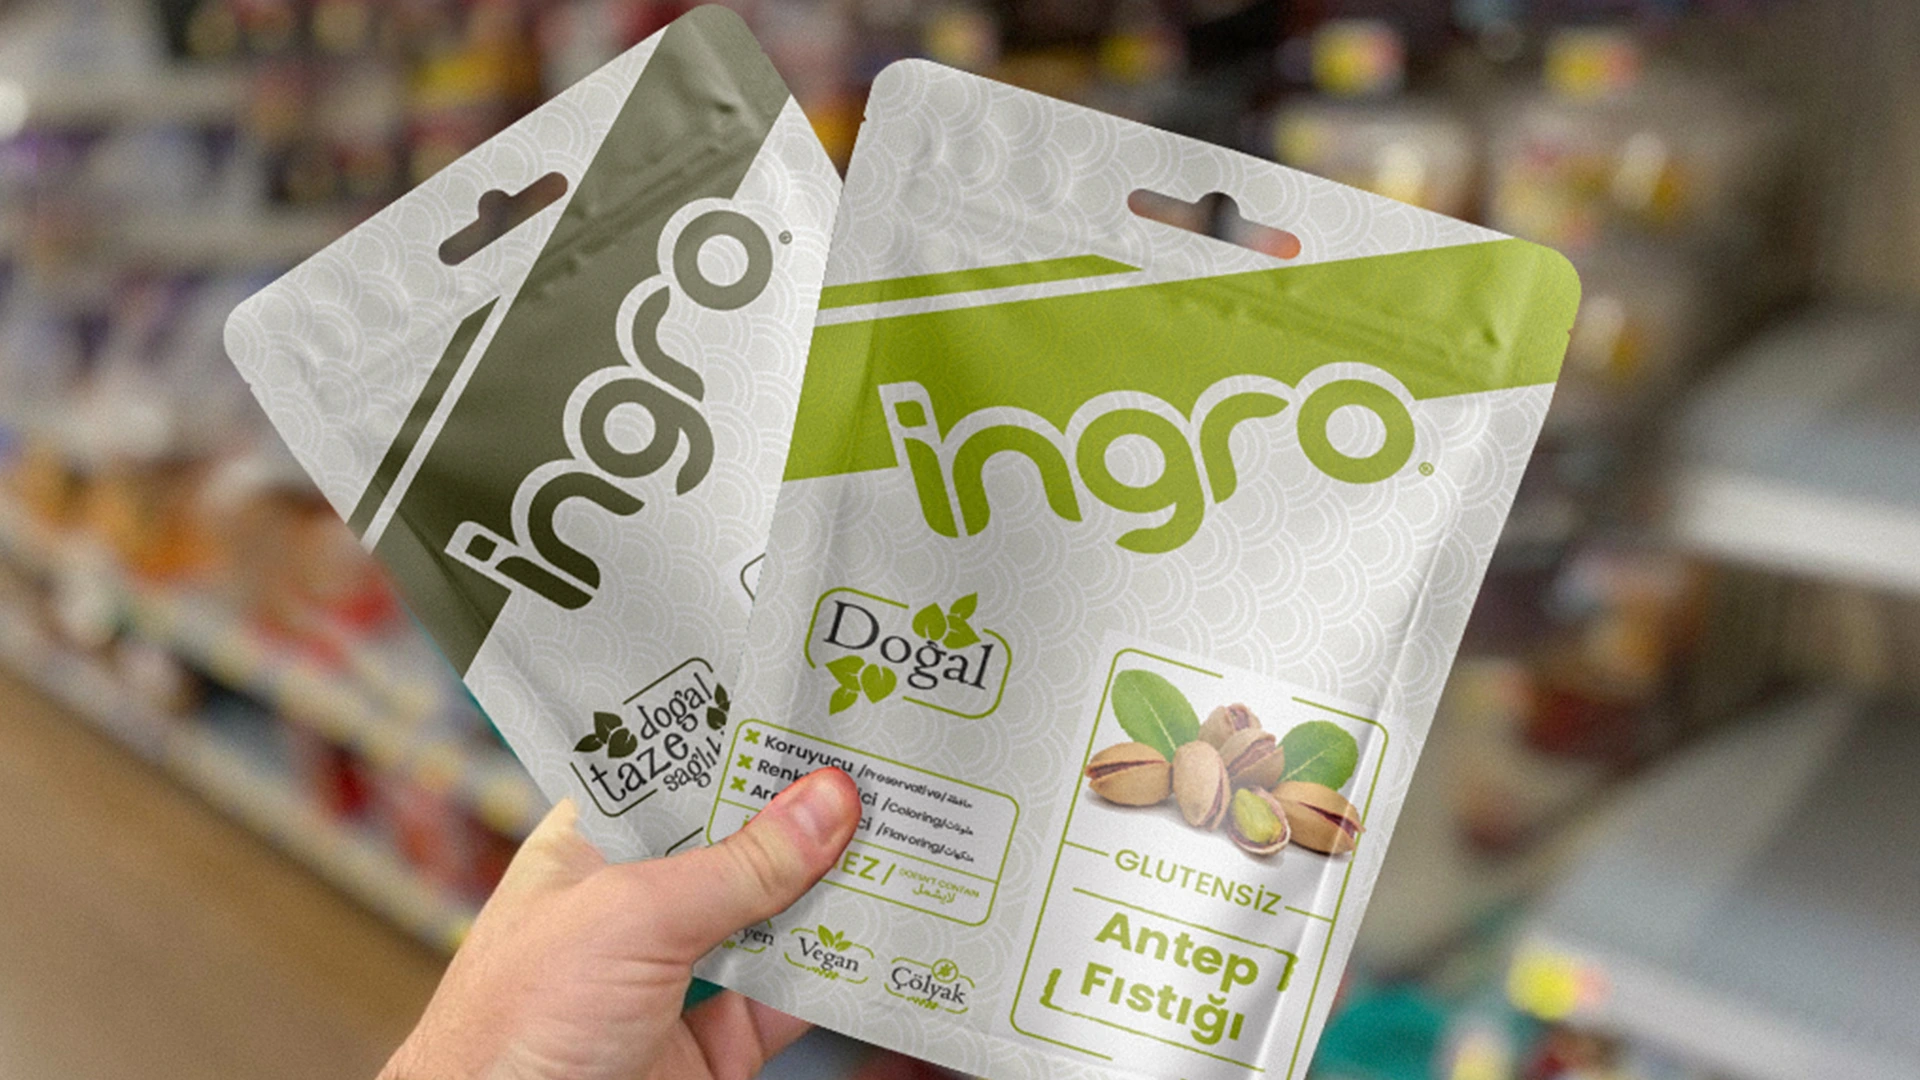 Ingro Packaging Design